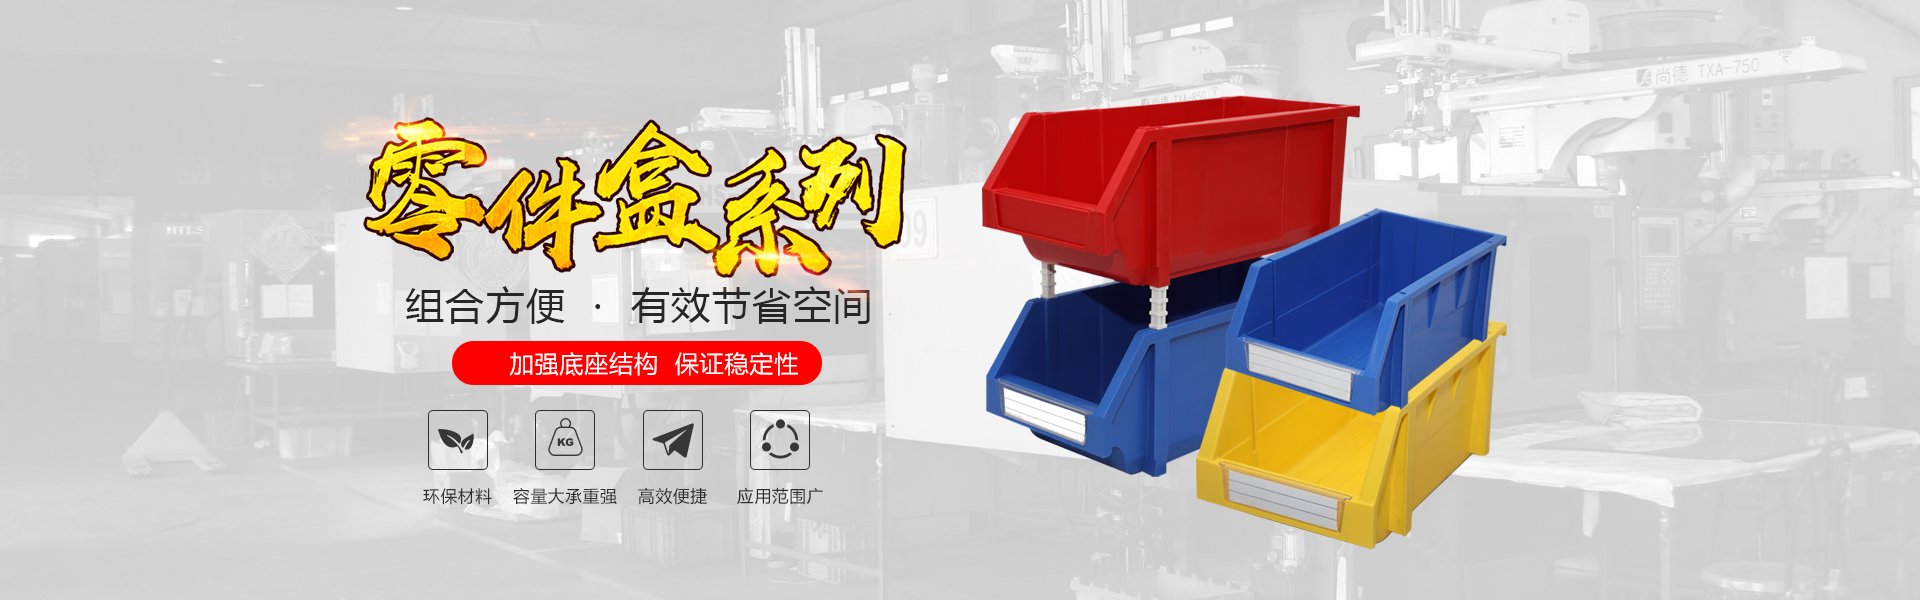 青岛ag九游会官方登录网址自动化主营零件盒,塑料零件盒,塑料托盘等产品!